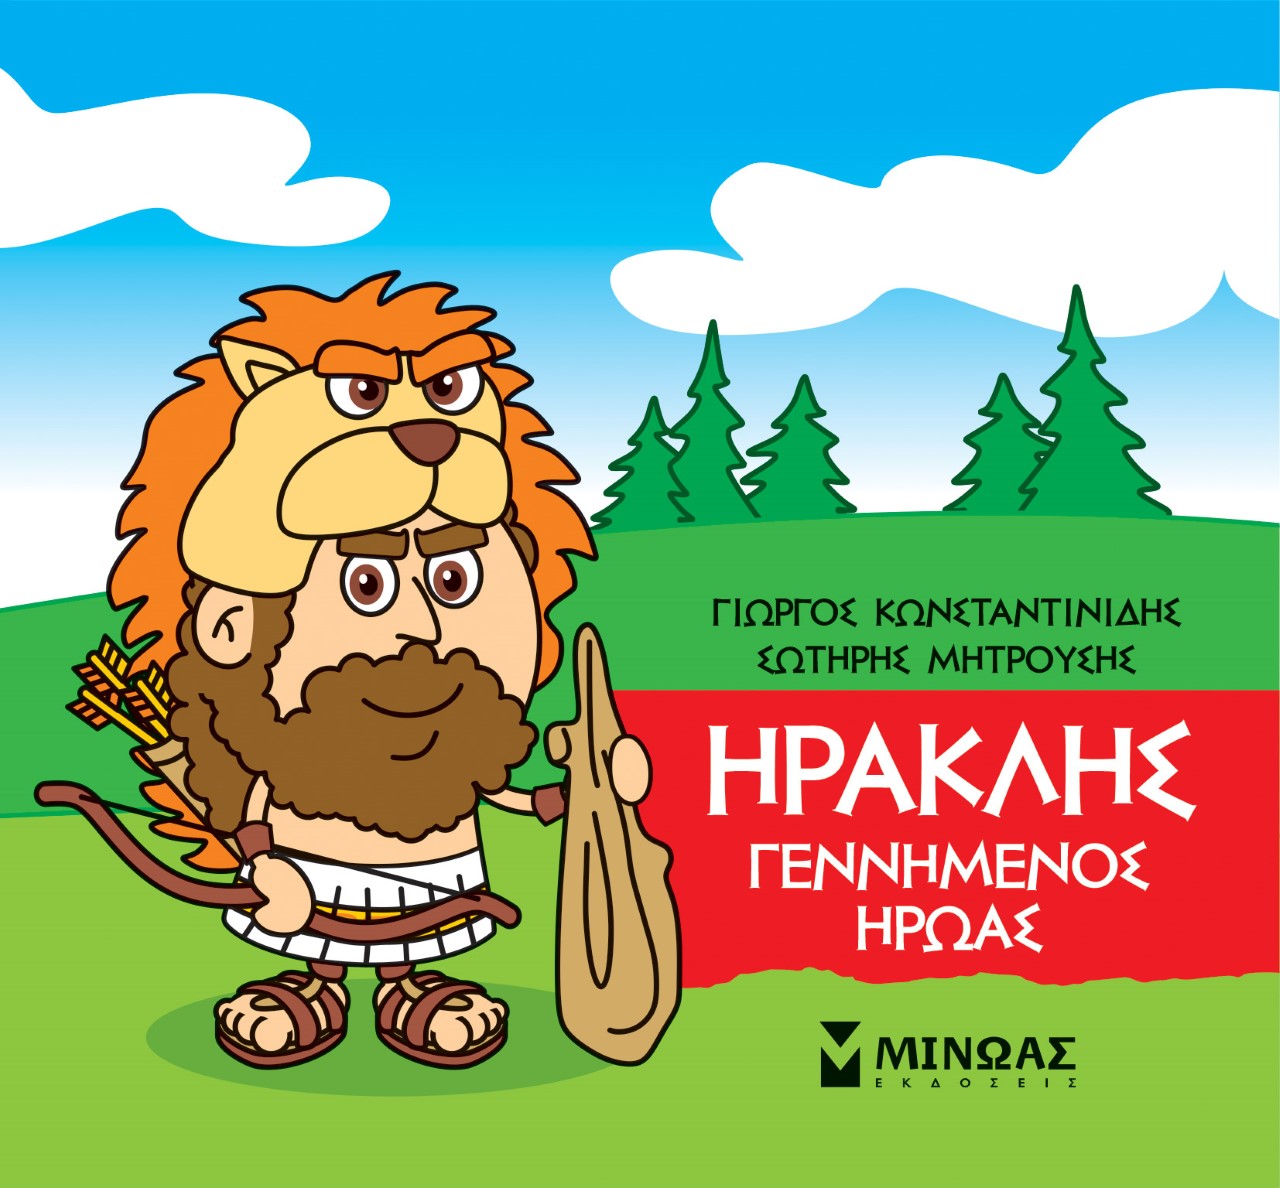 Μικρή μυθολογία: Ηρακλής. Γεννημένος ήρωας, , Κωνσταντινίδης, Γιώργος, Μίνωας, 2021